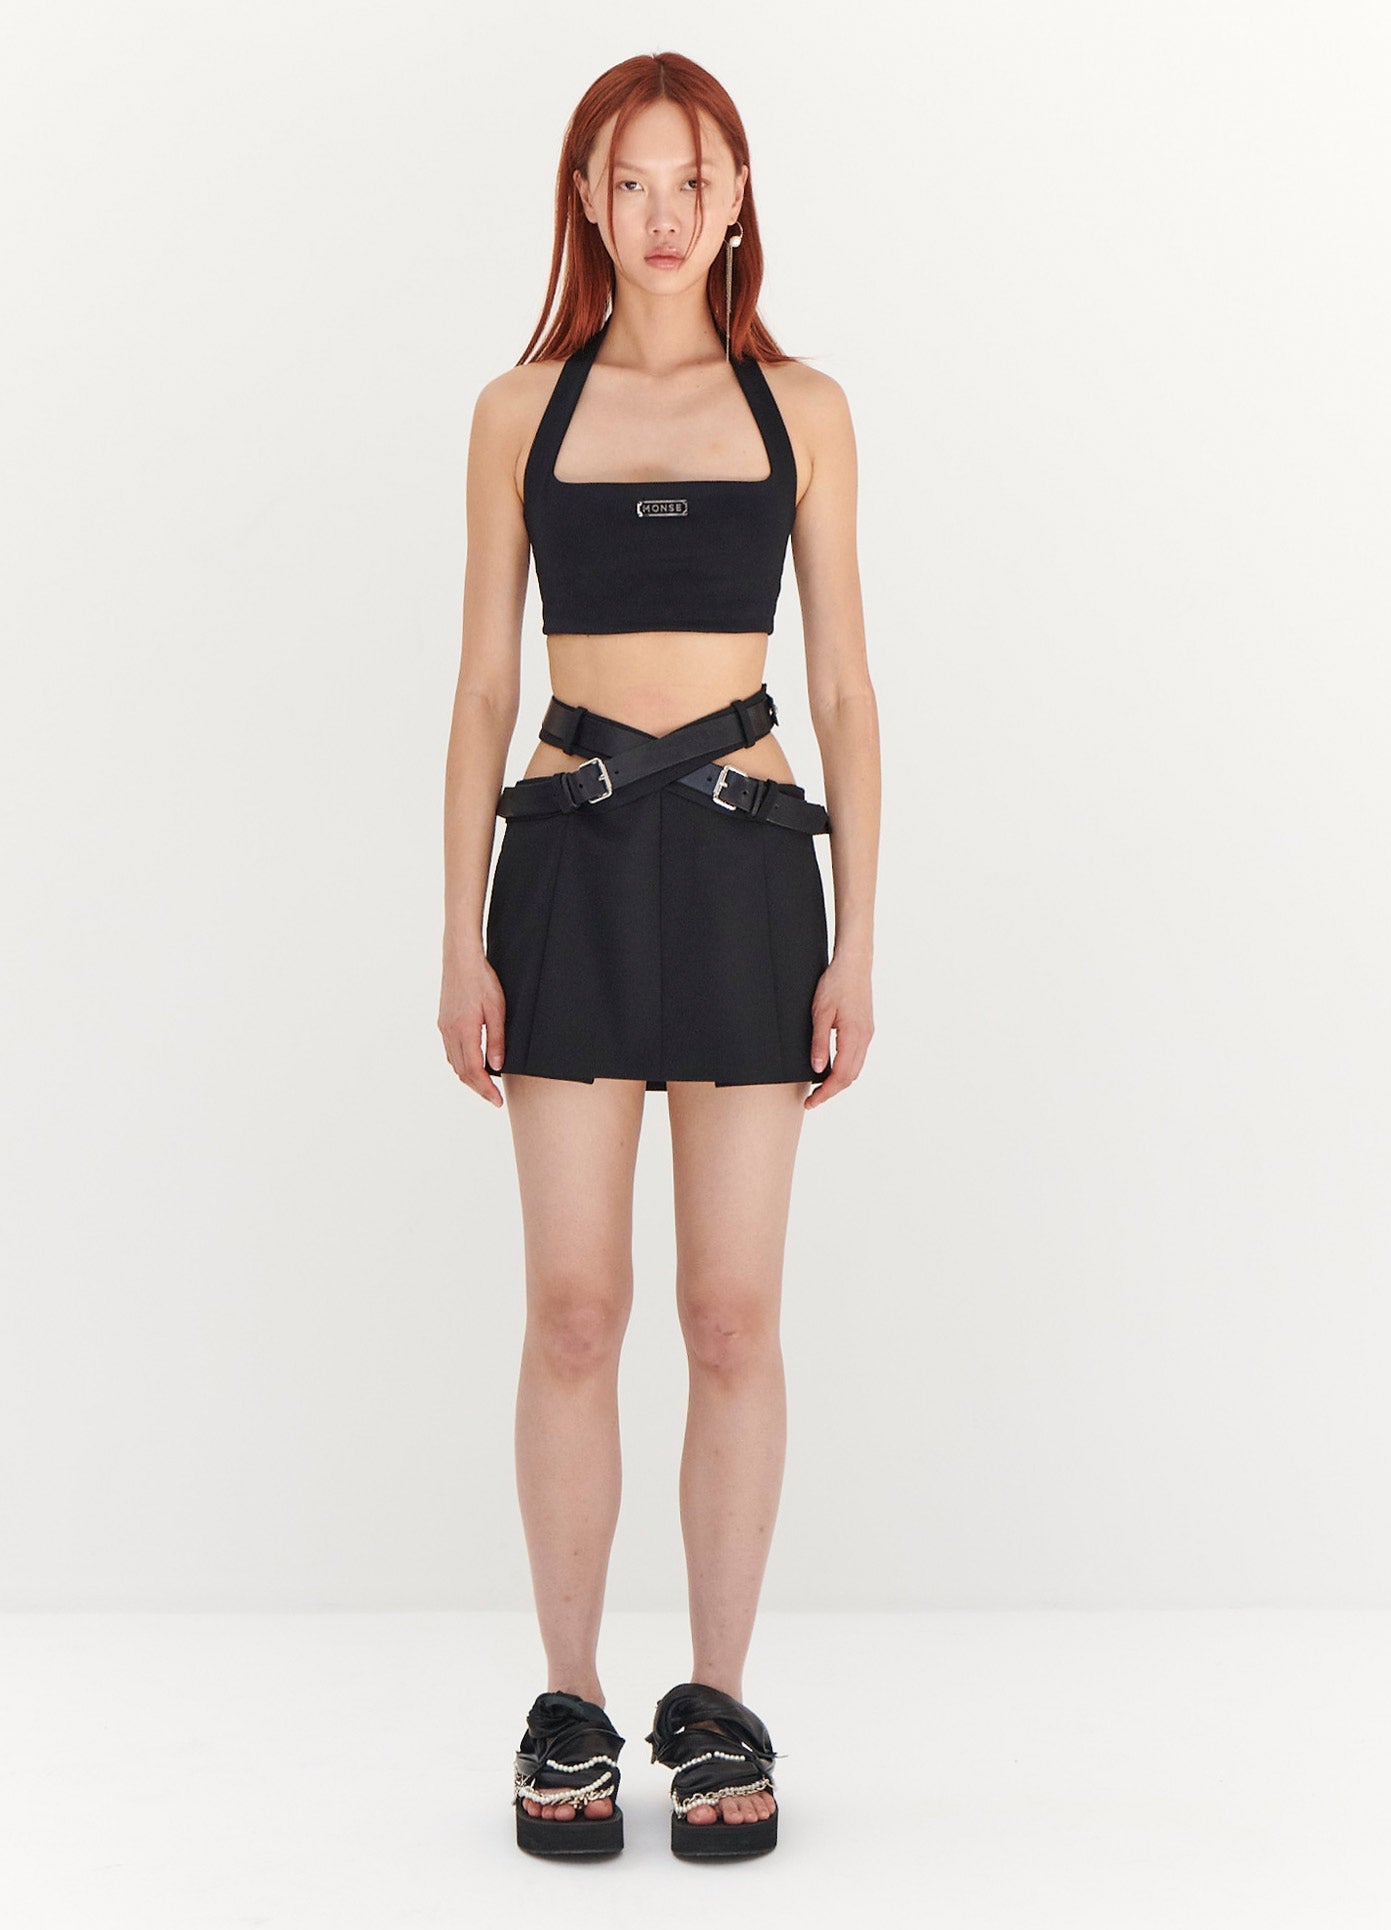 https://monse.com/cdn/shop/files/monse-criss-cross-waist-belted-mini-skirt-in-black-on-model-full-front-view.jpg?v=1686685913